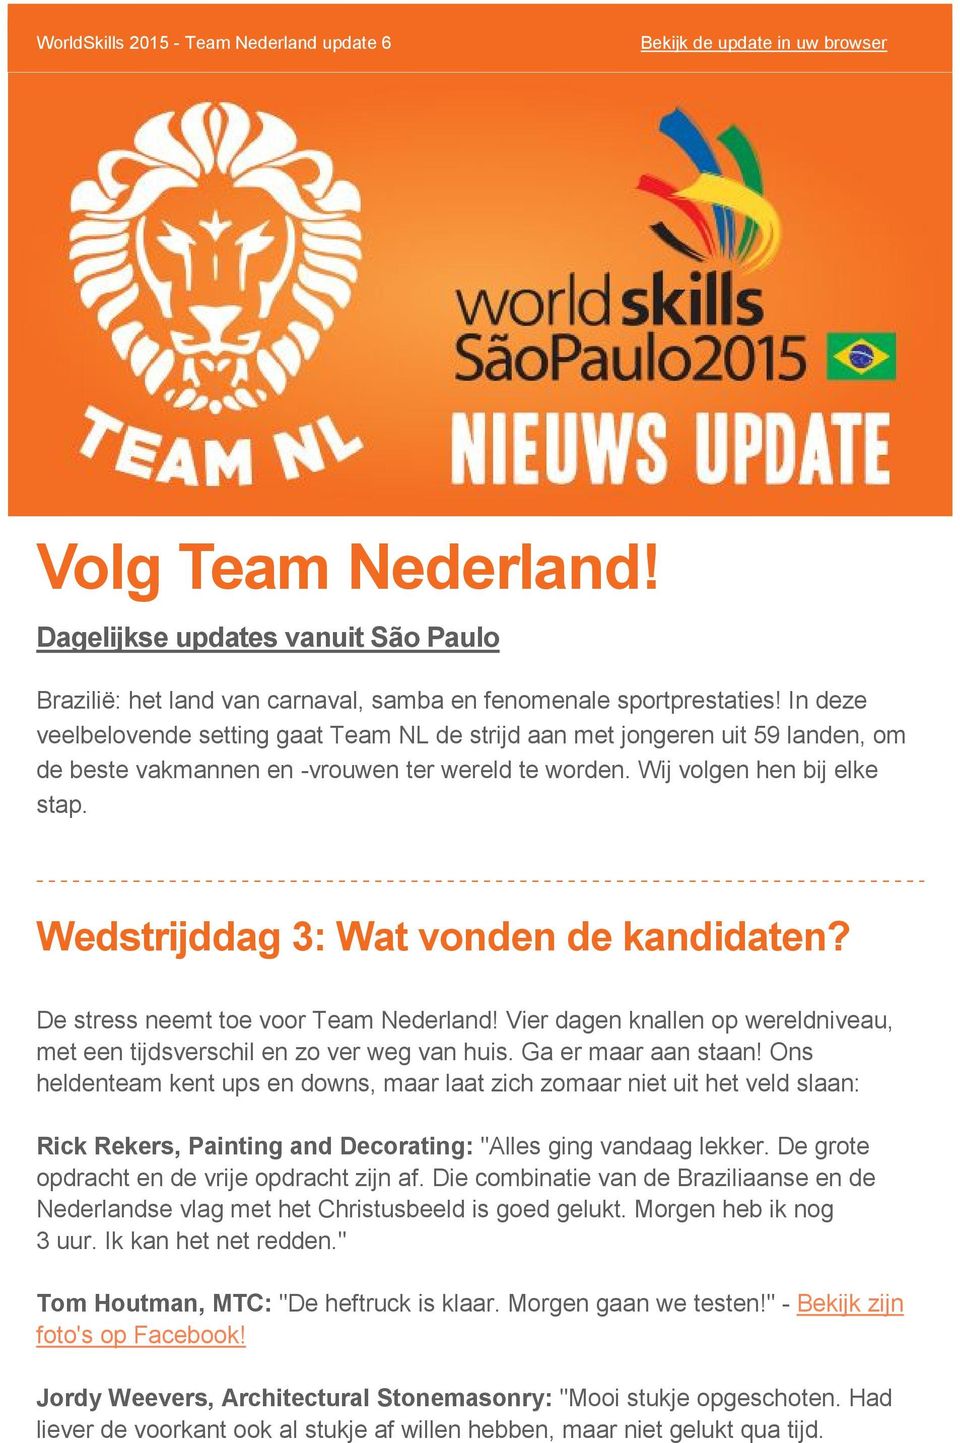 Wedstrijddag 3: Wat vonden de kandidaten? De stress neemt toe voor Team Nederland! Vier dagen knallen op wereldniveau, met een tijdsverschil en zo ver weg van huis. Ga er maar aan staan!